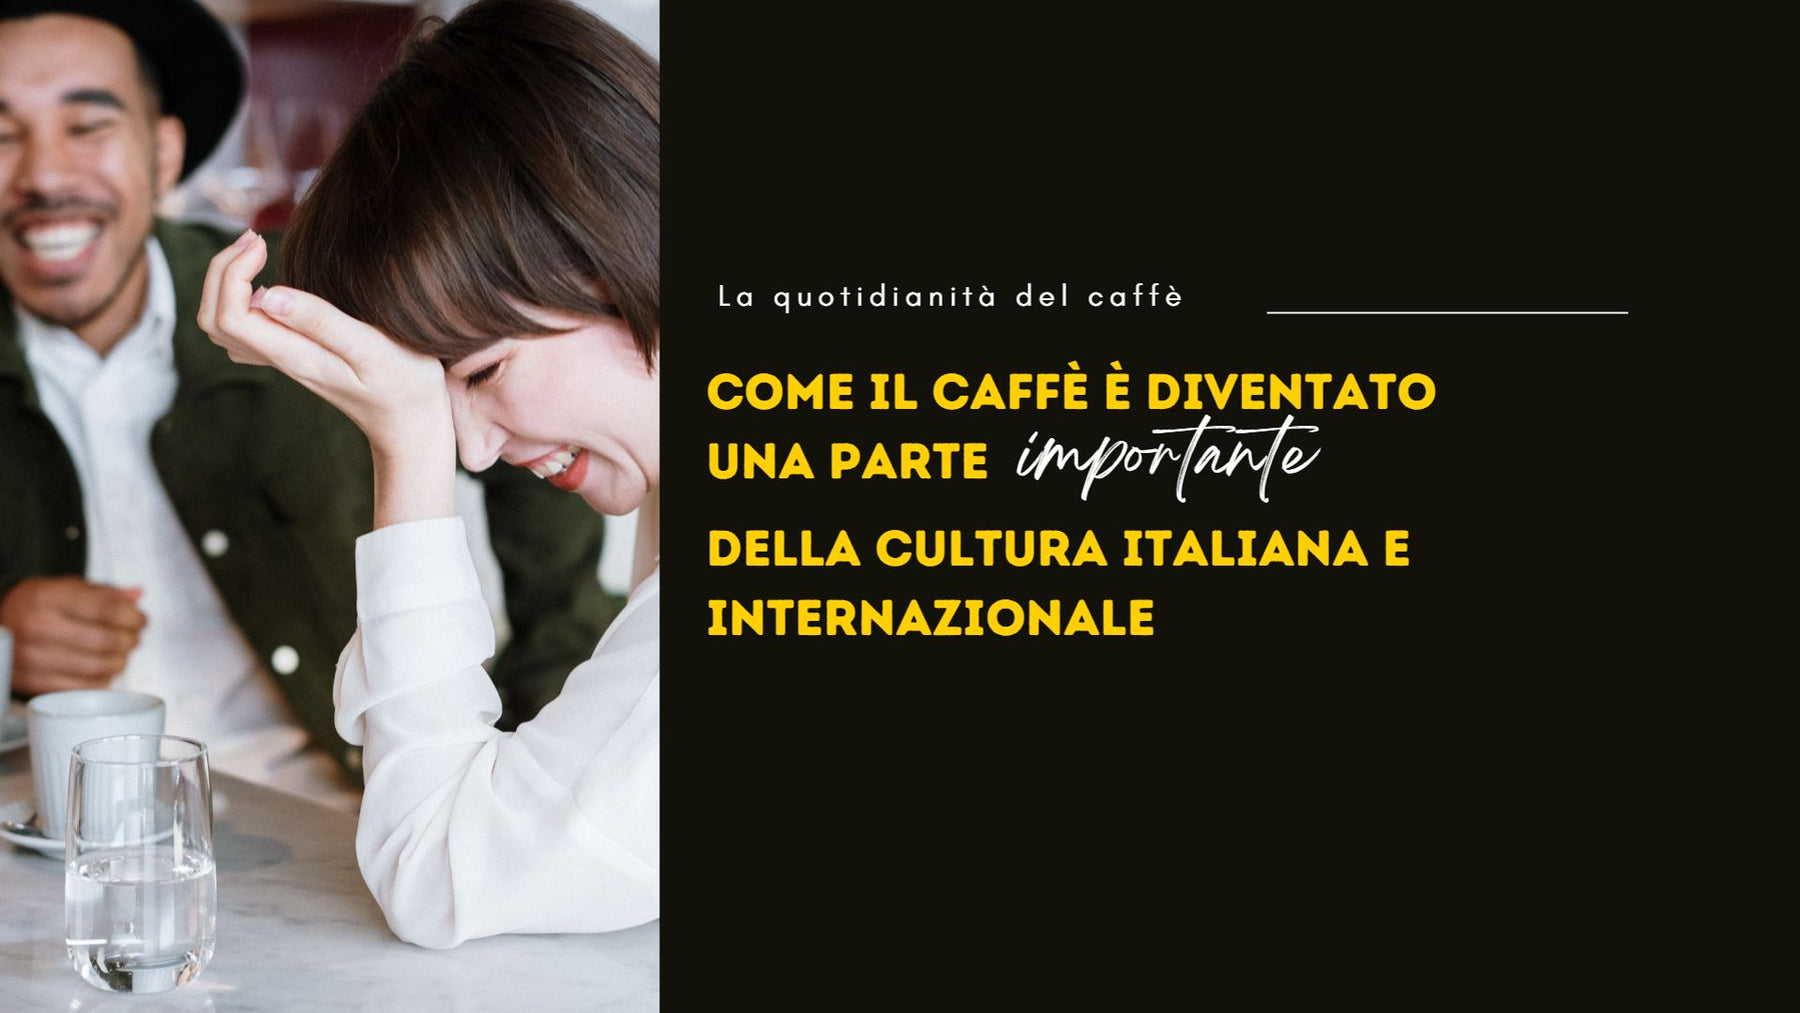 Come il caffè è diventato una parte importante della cultura italiana e internazionale